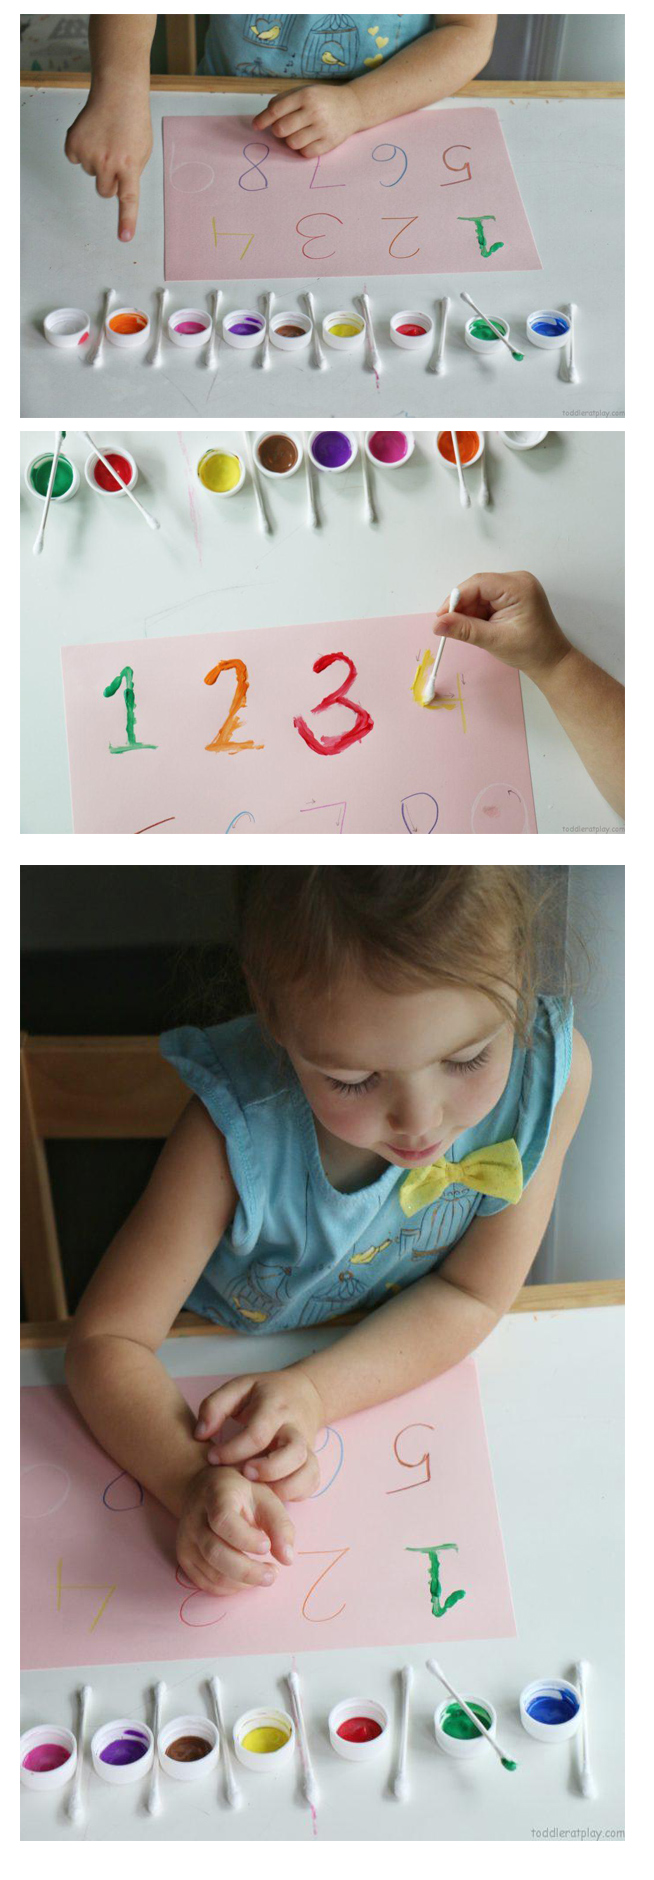 مهارتهای ریاضی-آموزش اعداد با رنگ و گوش پاک کن